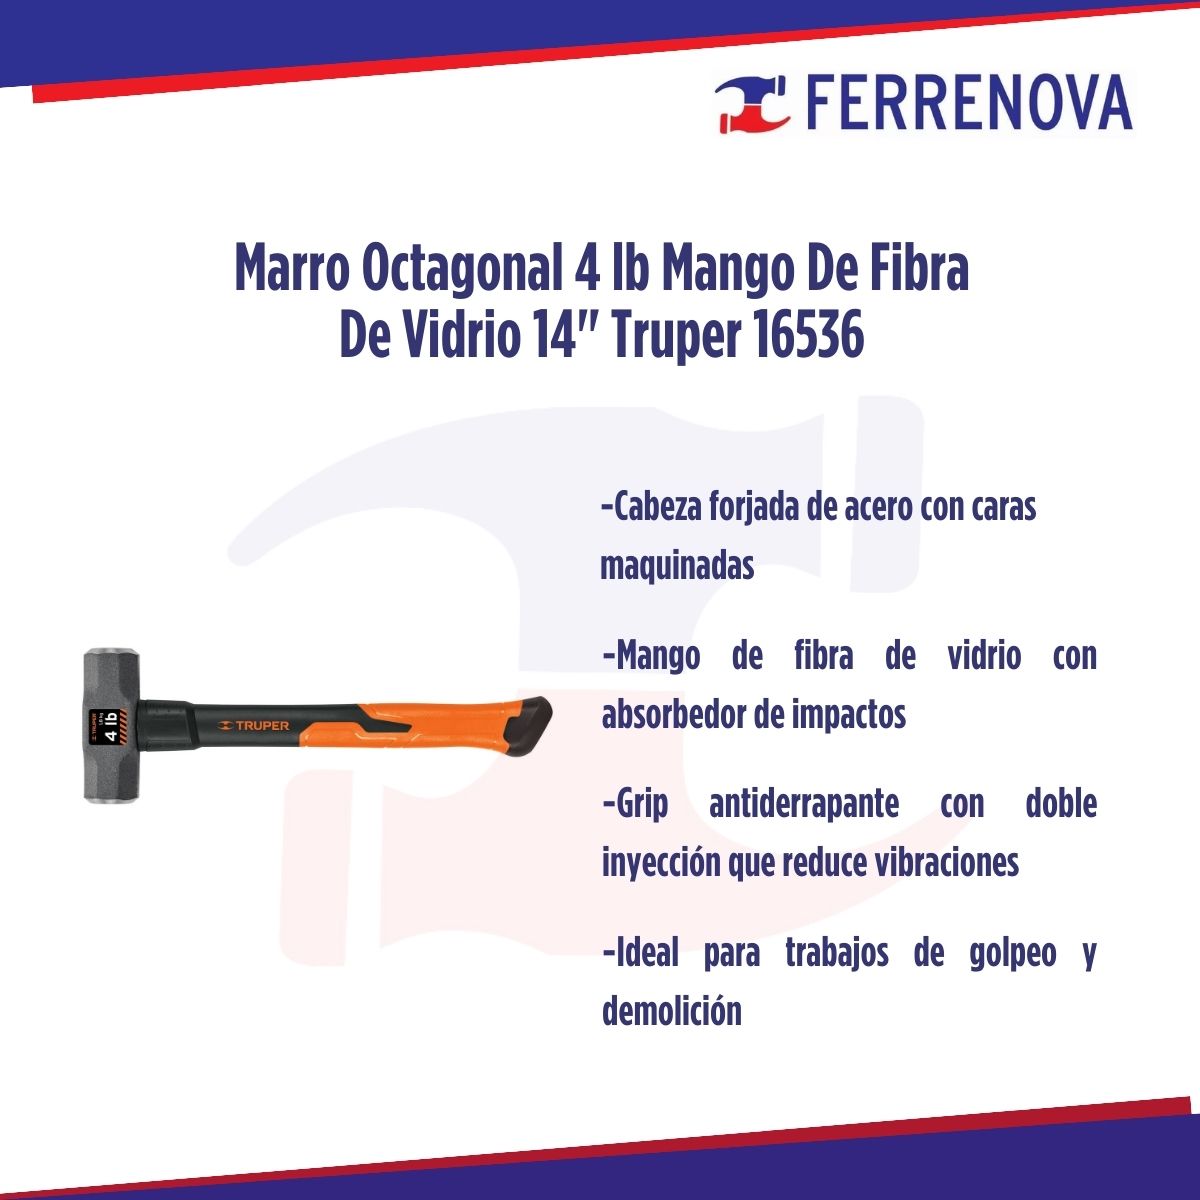 Marro Octagonal 4lb Mango De Fibra De Vidrio 14" Truper 16536